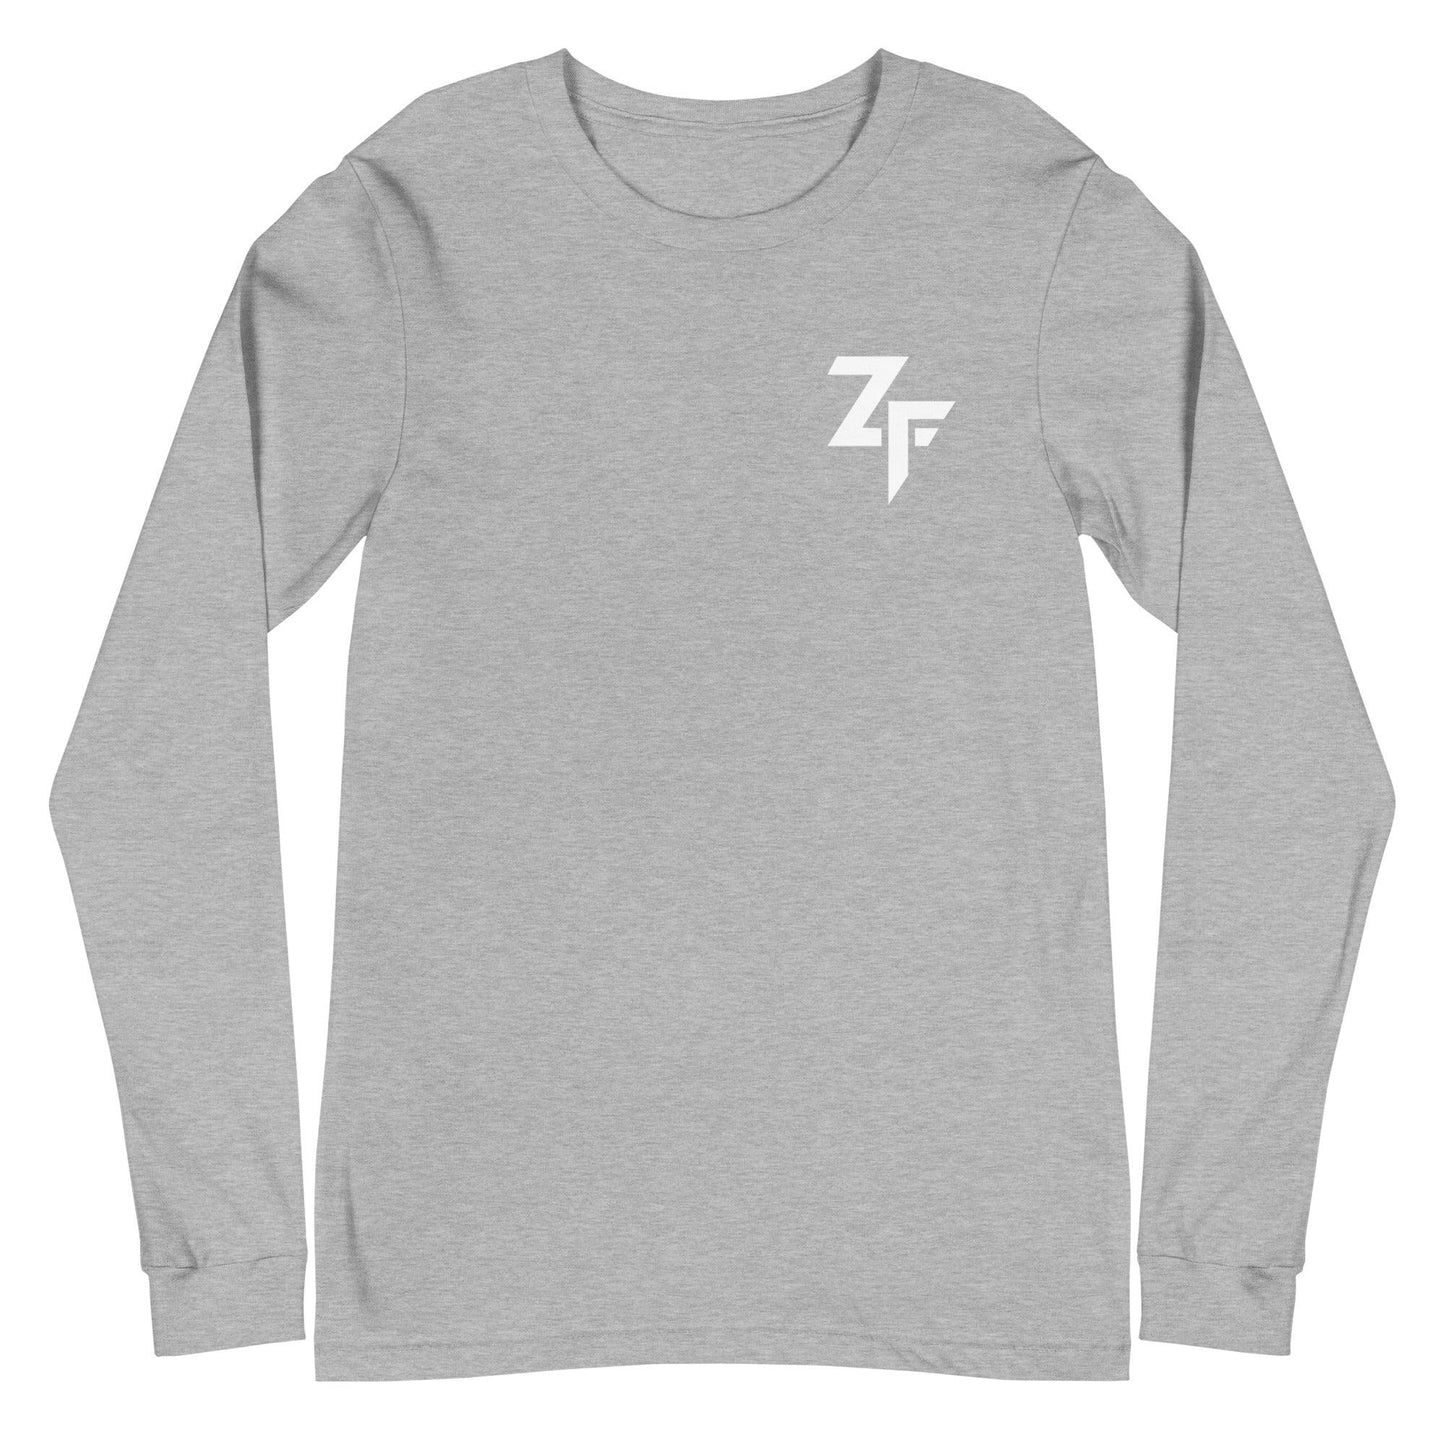 Zakhari Franklin "ZF" Long Sleeve Tee - Fan Arch